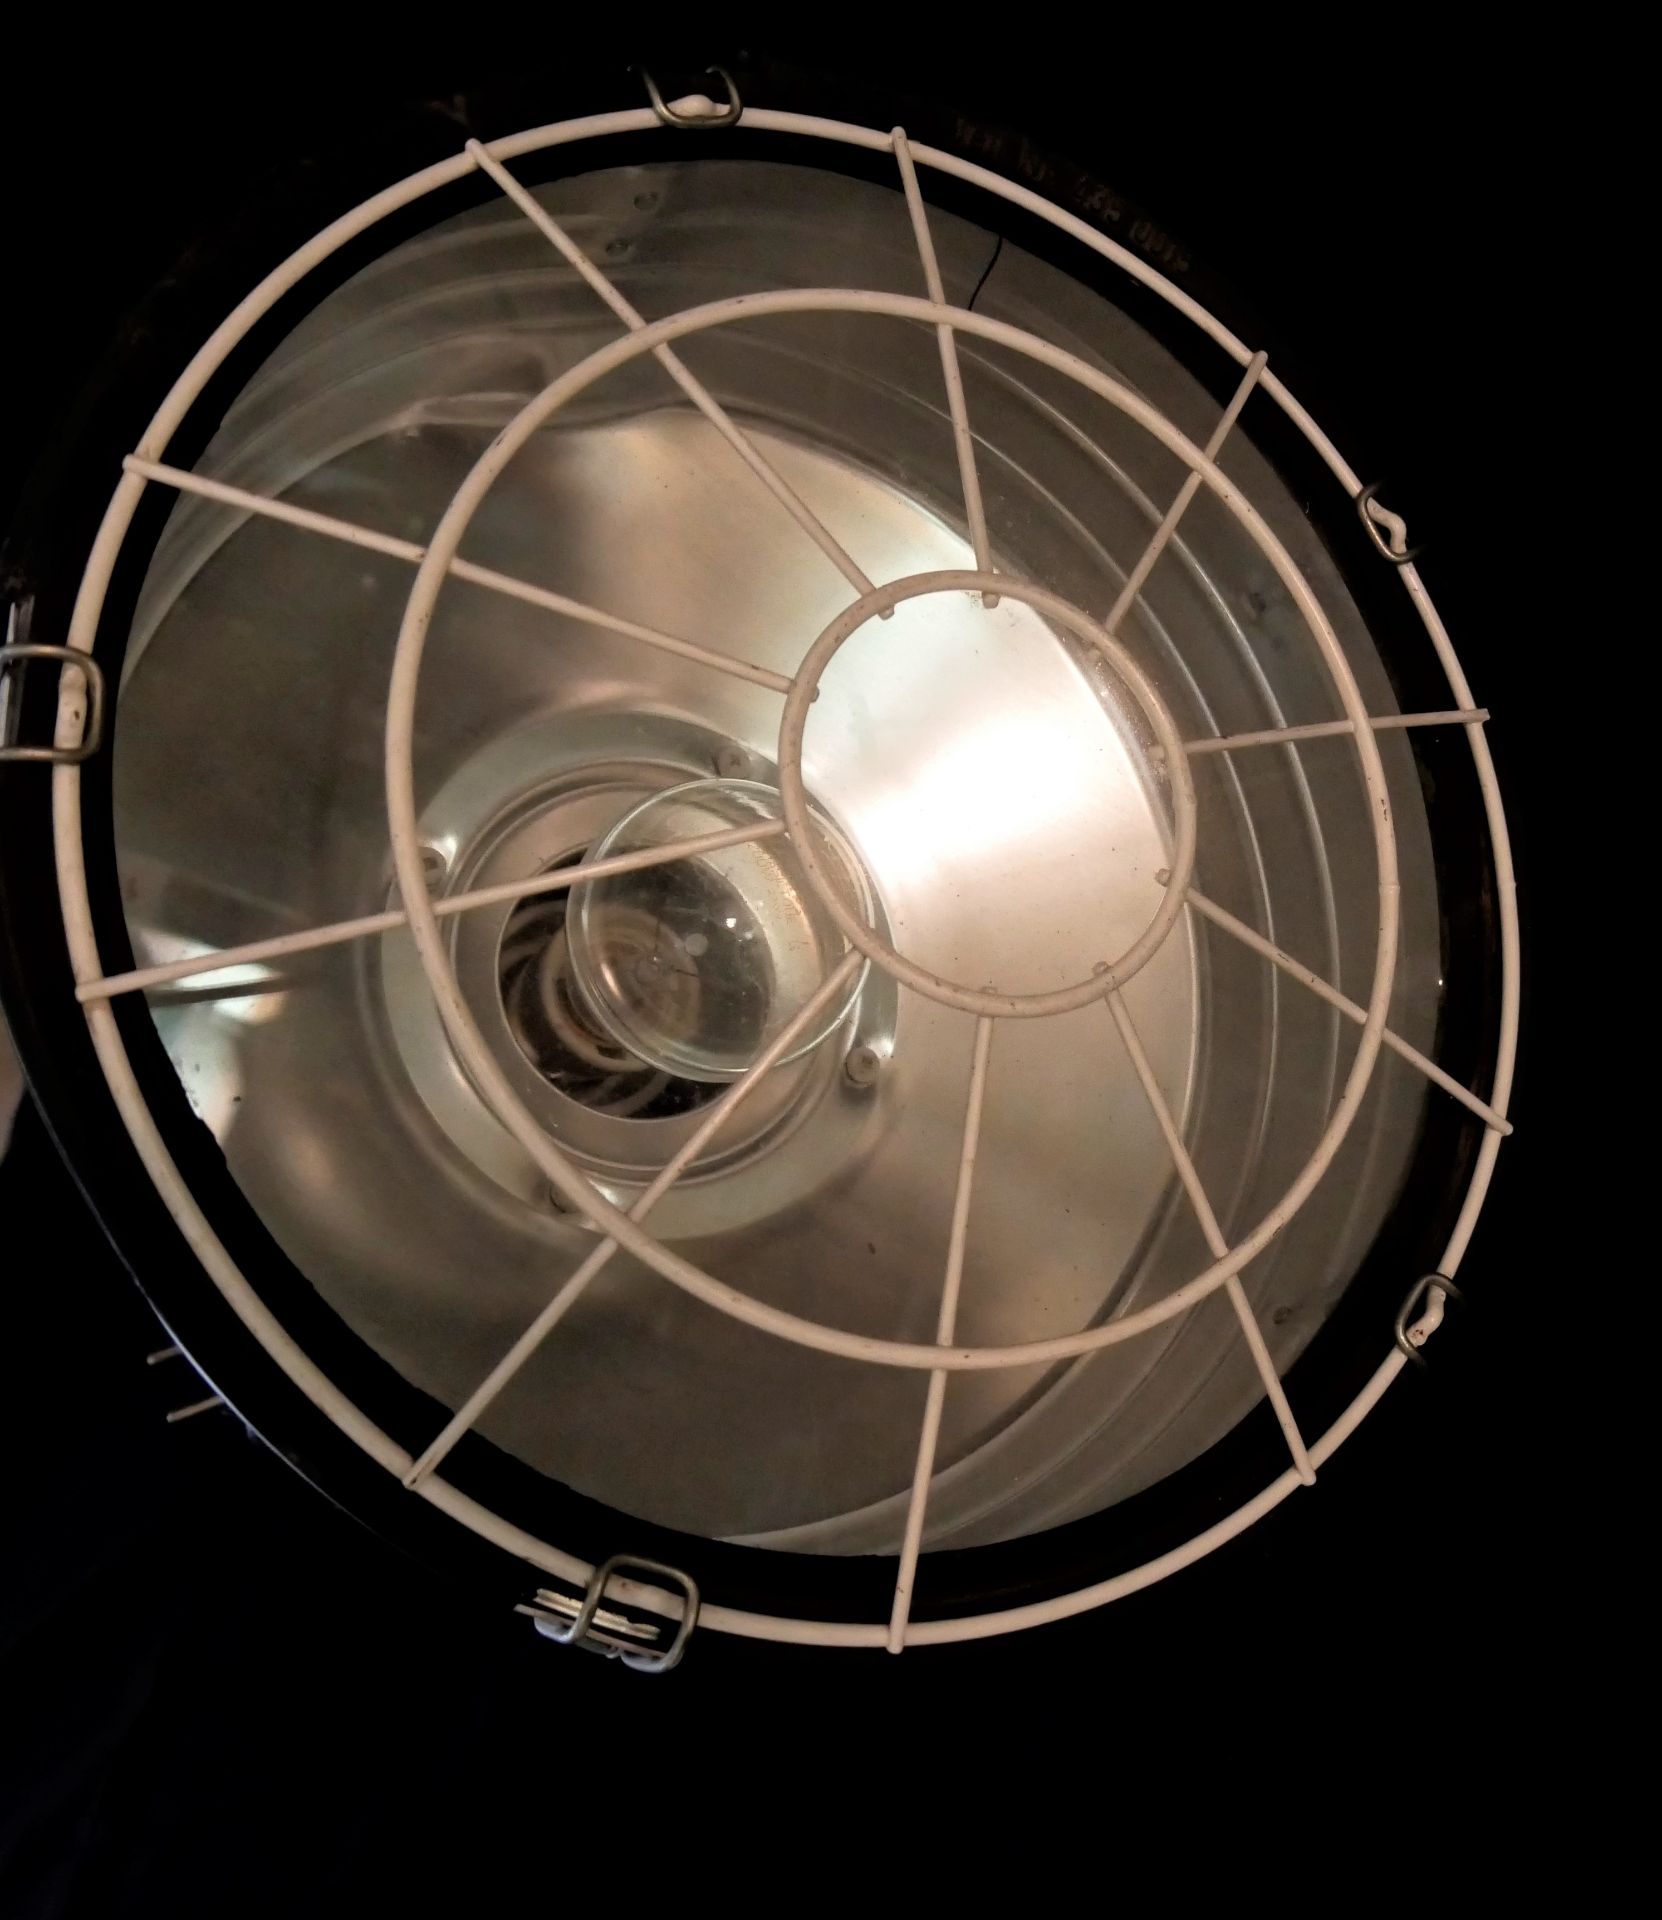 Meyer Lampe, Modell 0557, 210/220 W. Zulässige Belastung, max 10 A Gleichstrom, 16 A Wechselstrom. - Bild 3 aus 3